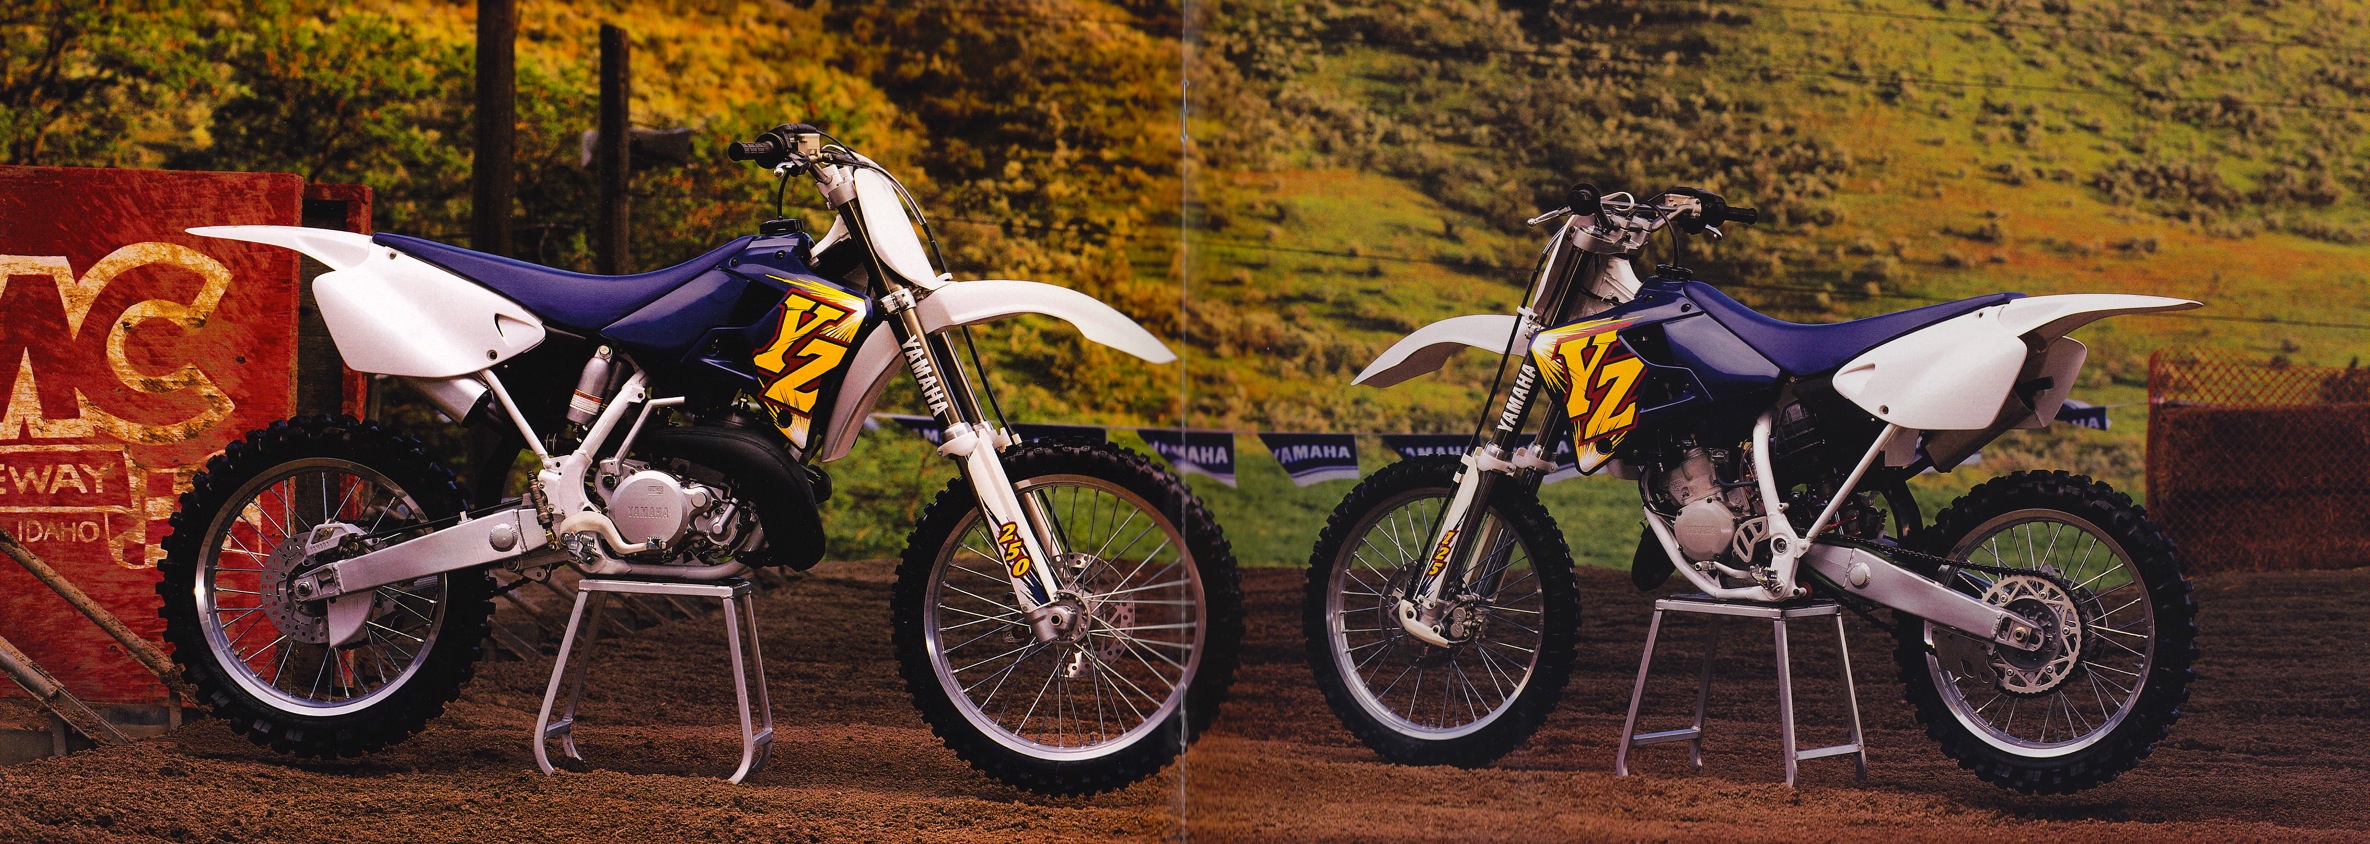 Мотоцикл Yamaha YZ 125 1988 фото